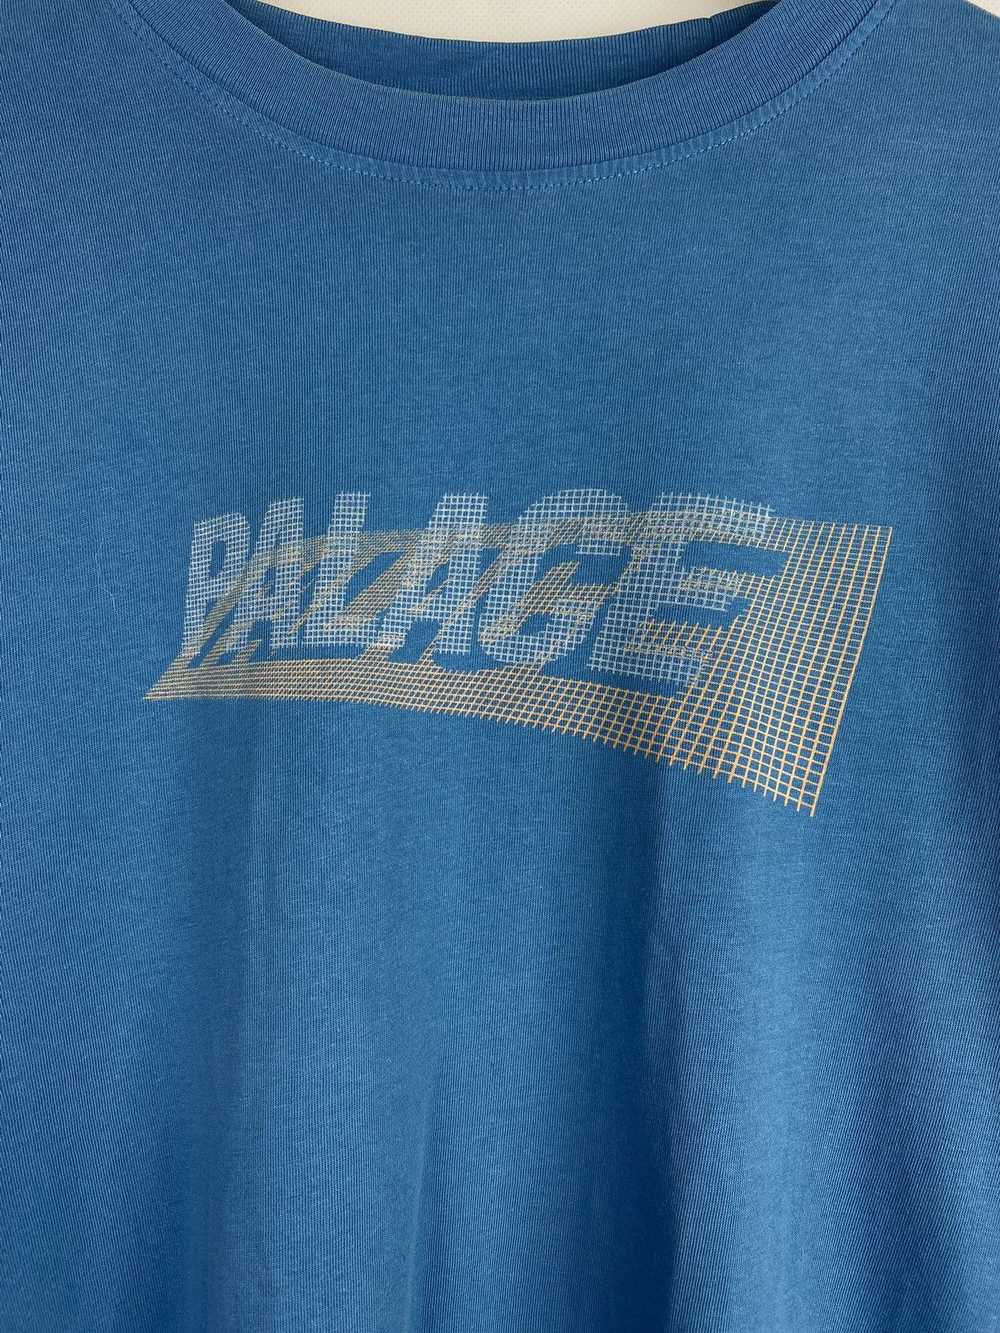 Palace 3-P big logo longsleeve - image 8